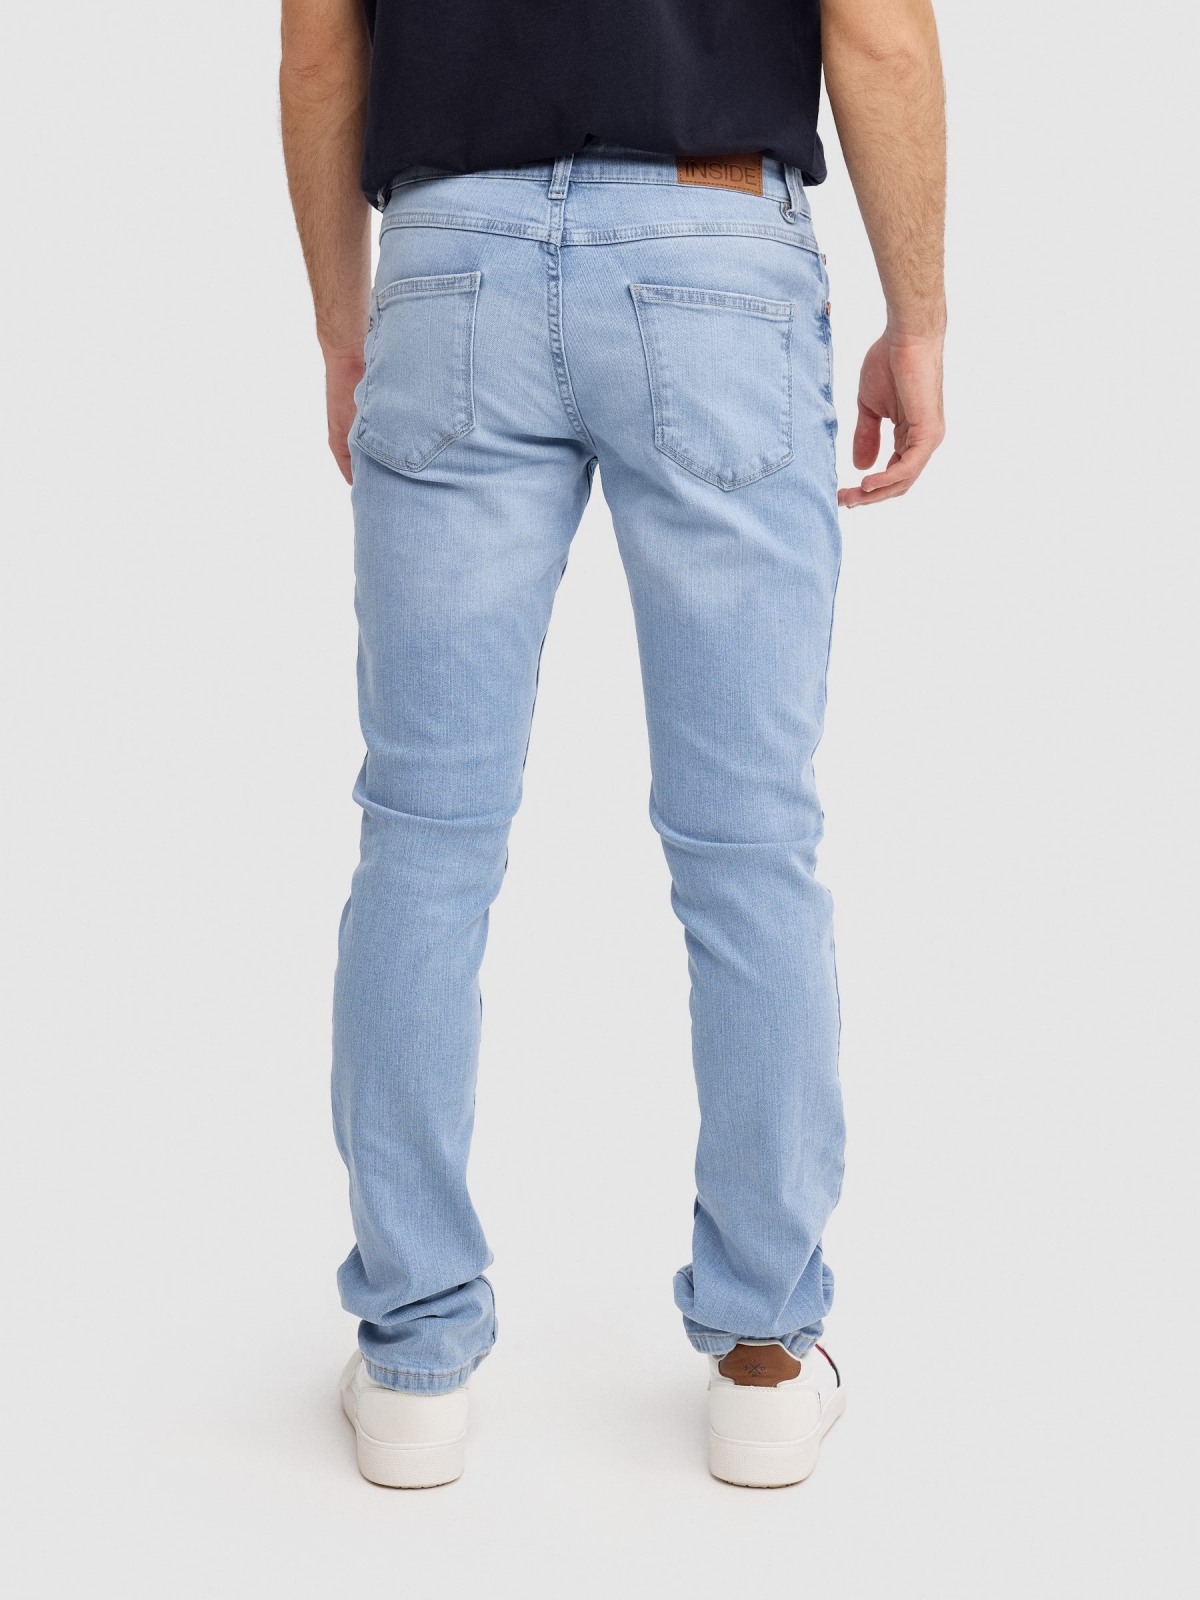 Calça jeans regular fit azul claro lavagem fraca da coxa azul vista meia traseira